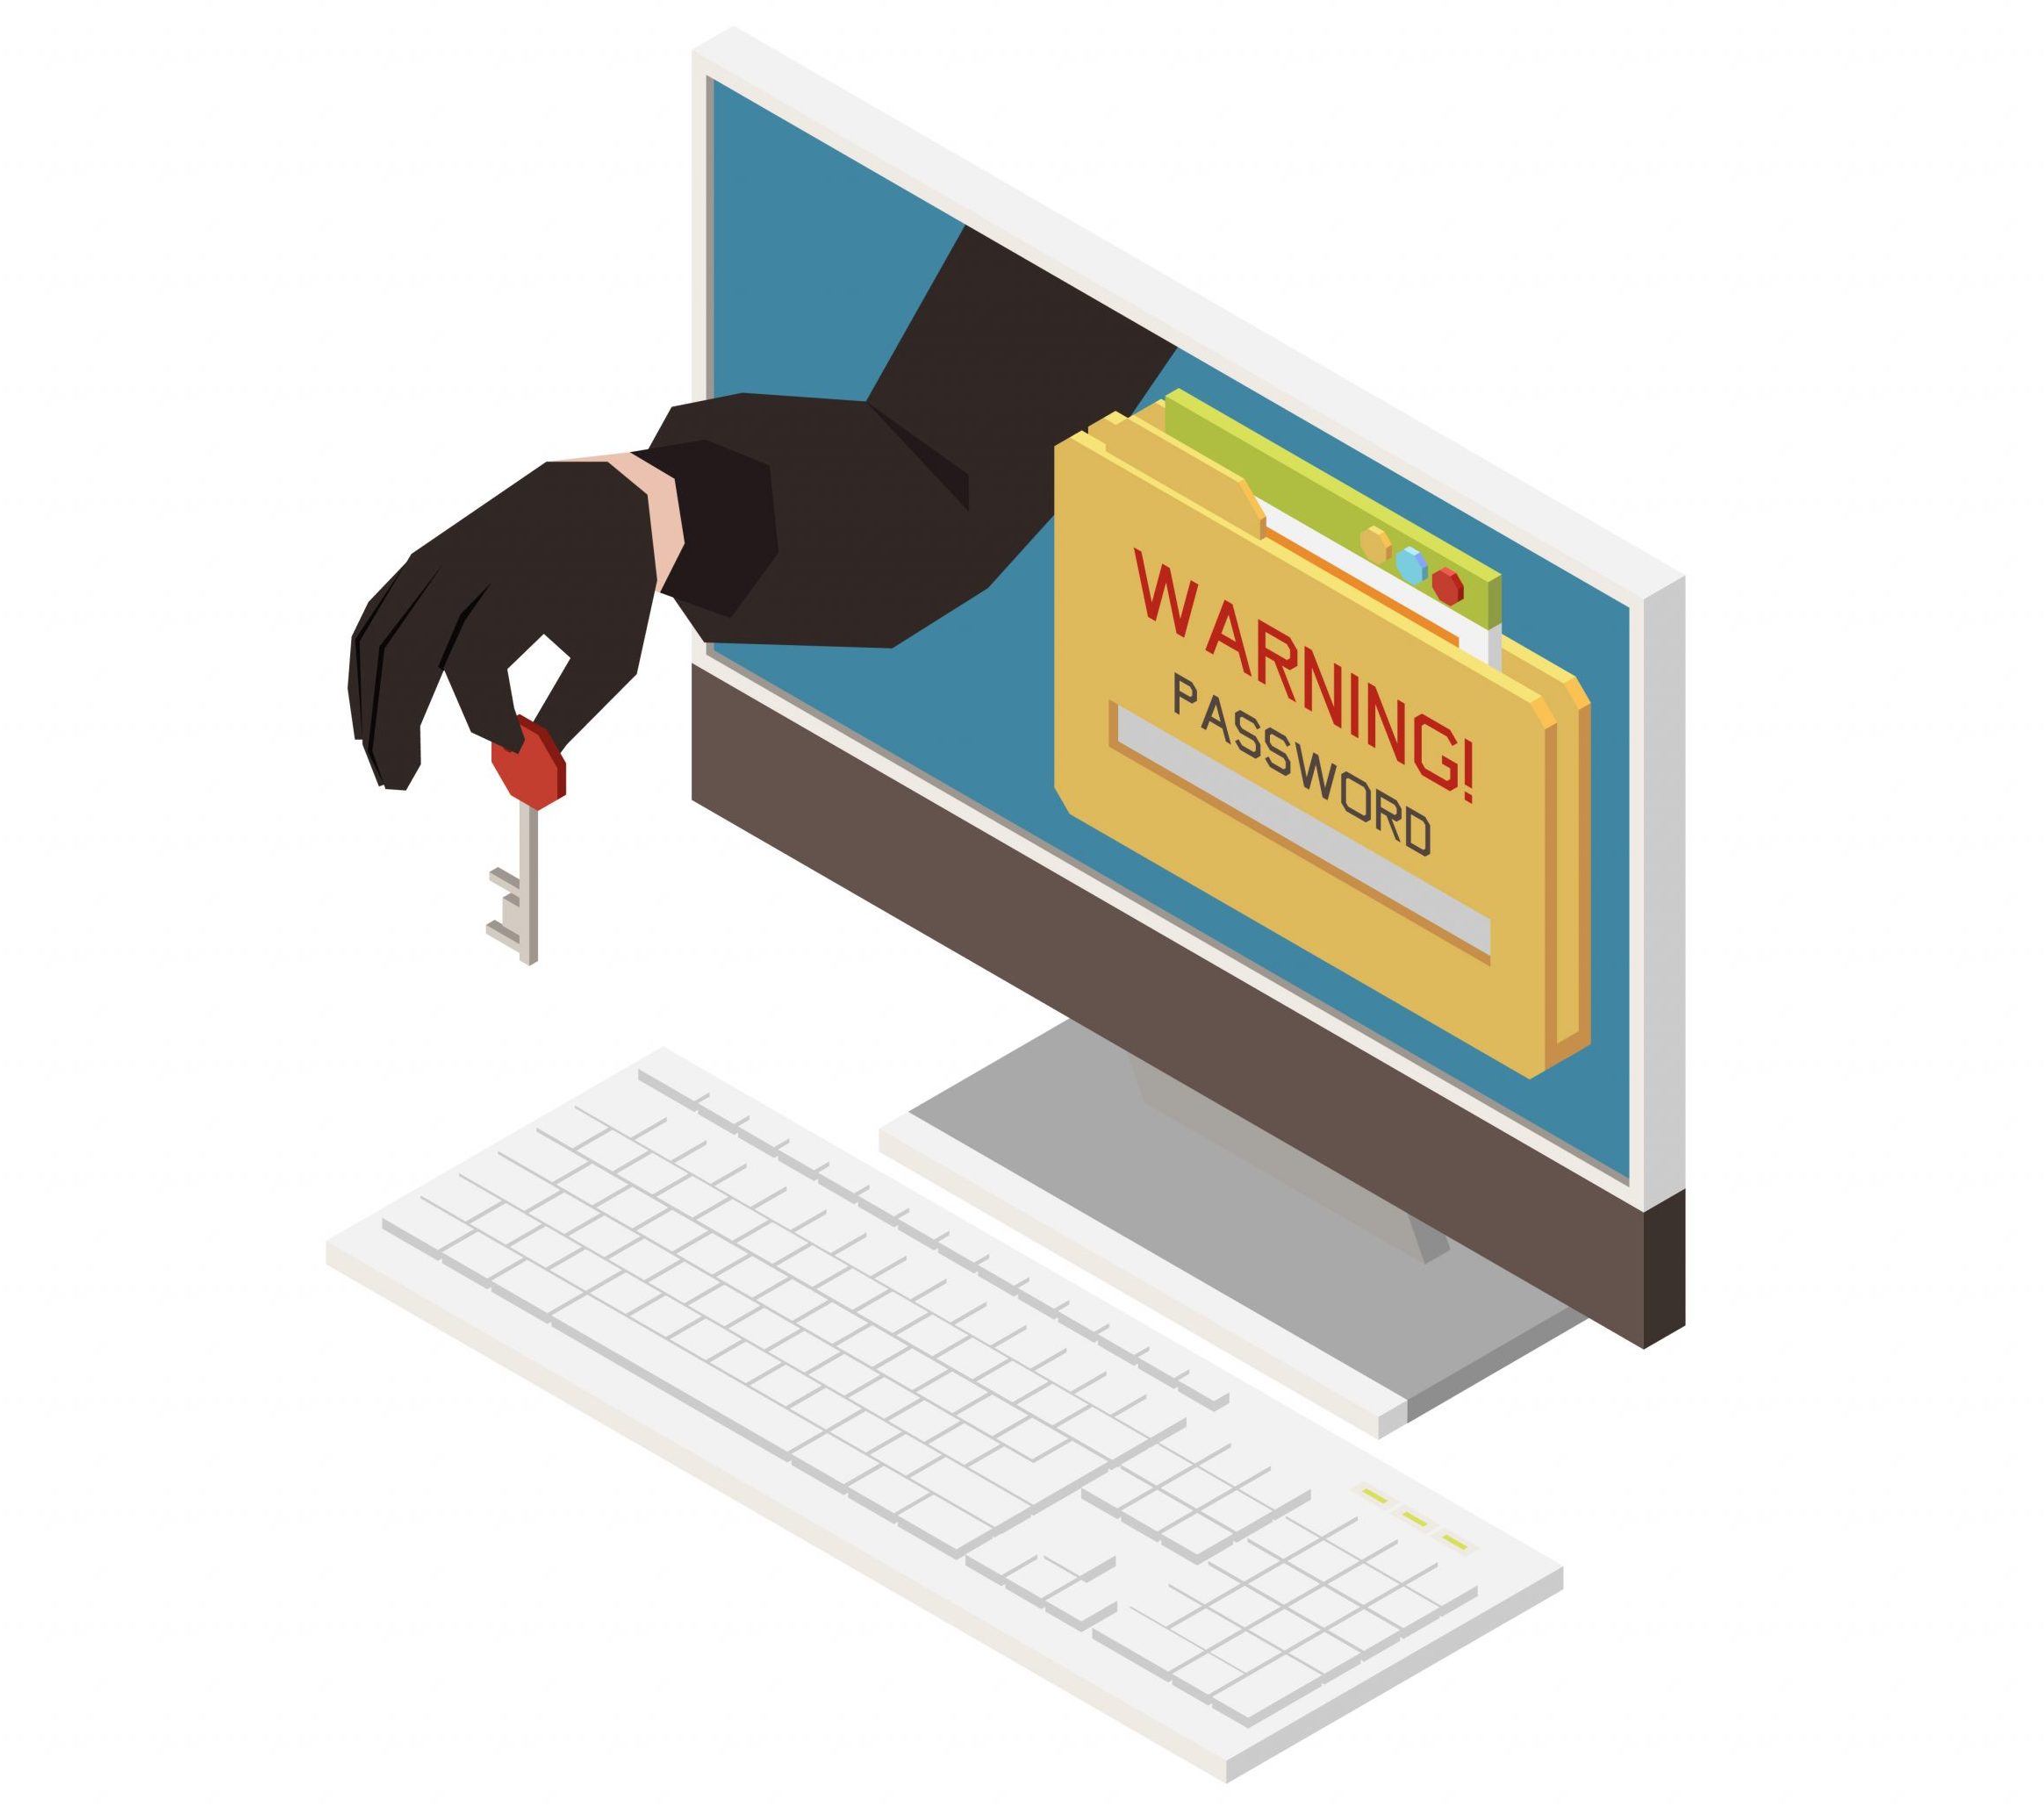 Lừa đảo và Doanh nghiệp: năm 2021, Kaspersky ngăn chặn 11 triệu email độc hại tại Đông Nam Á